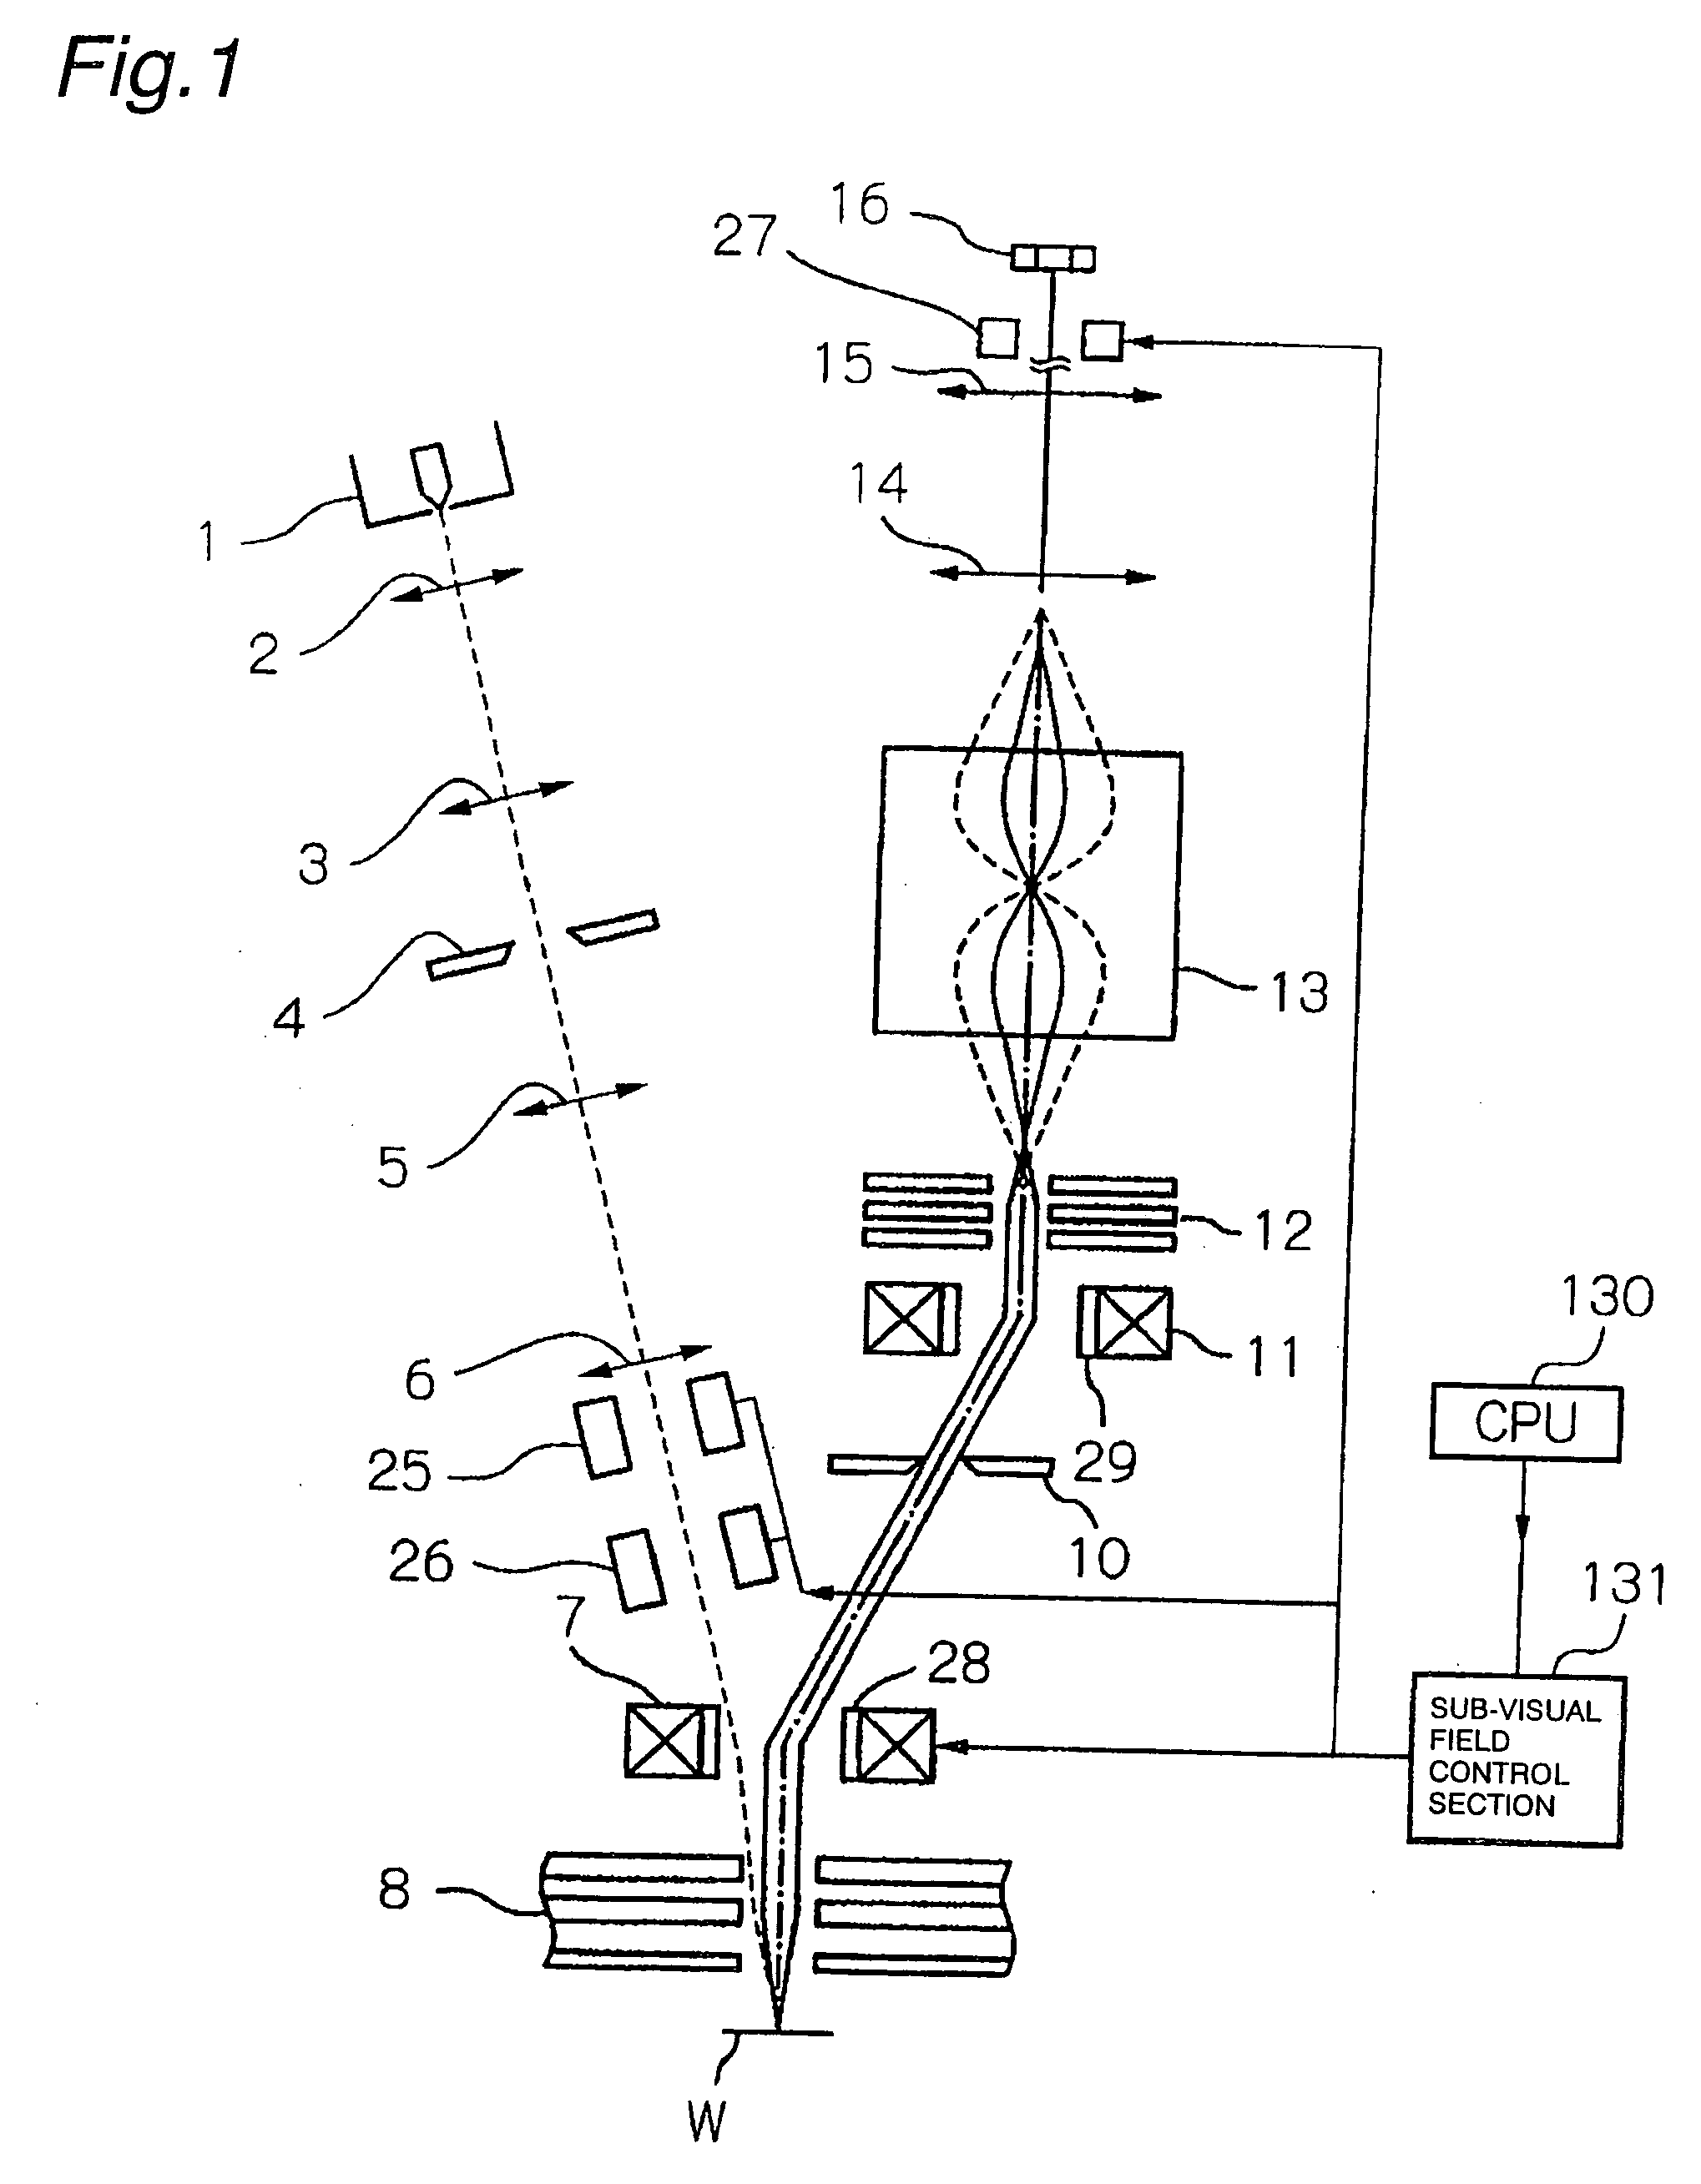 Electron beam apparatus